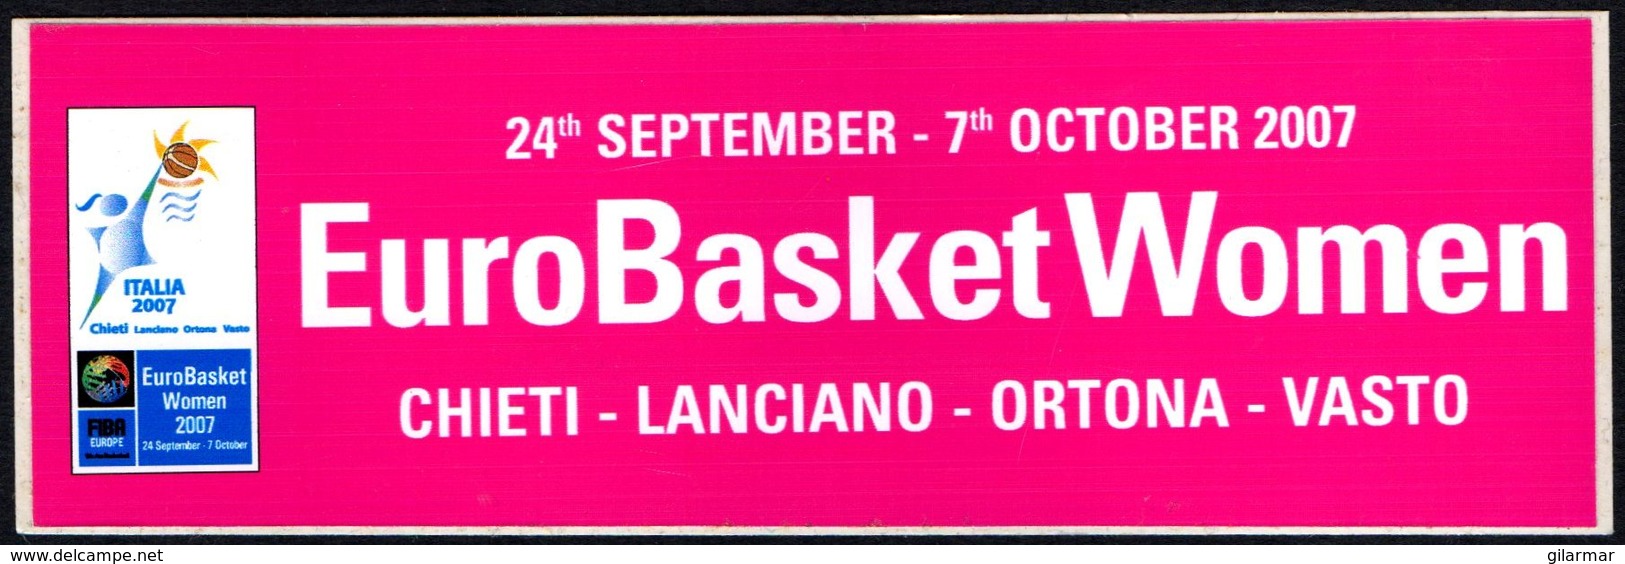 PALLACANESTRO - ITALIA 2007  - ADESIVO / AUTOCOLLANT EUROBASKET WOMEN 2007 - Stickers